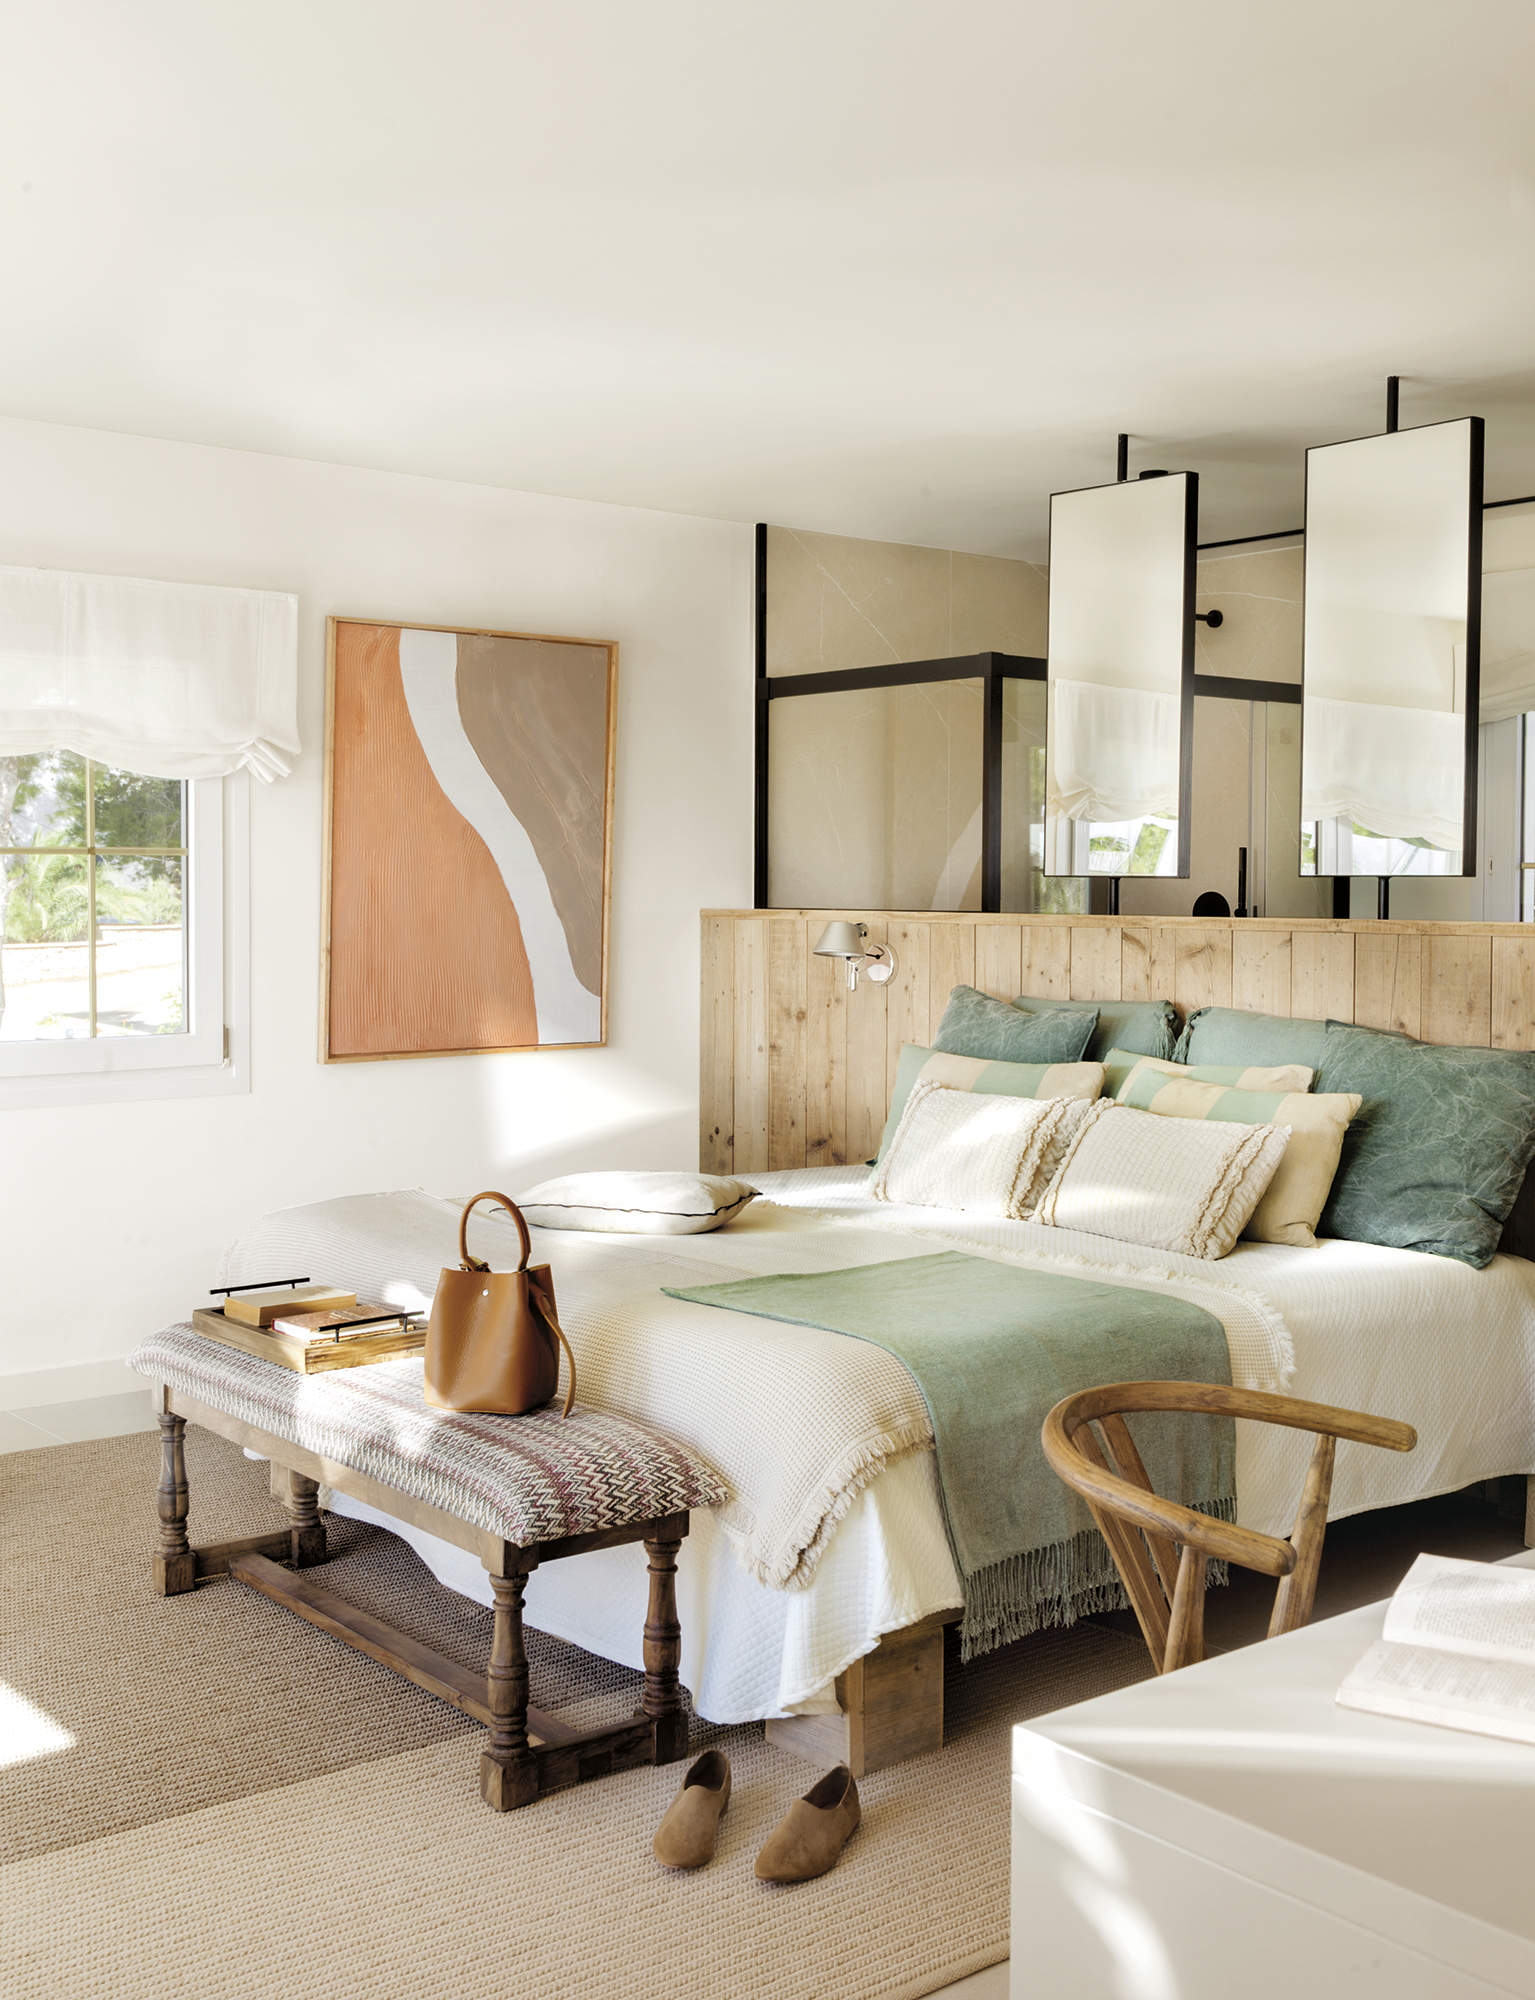 Dormitorio de estilo mediterráneo con mucha luz y pinceladas turquesas